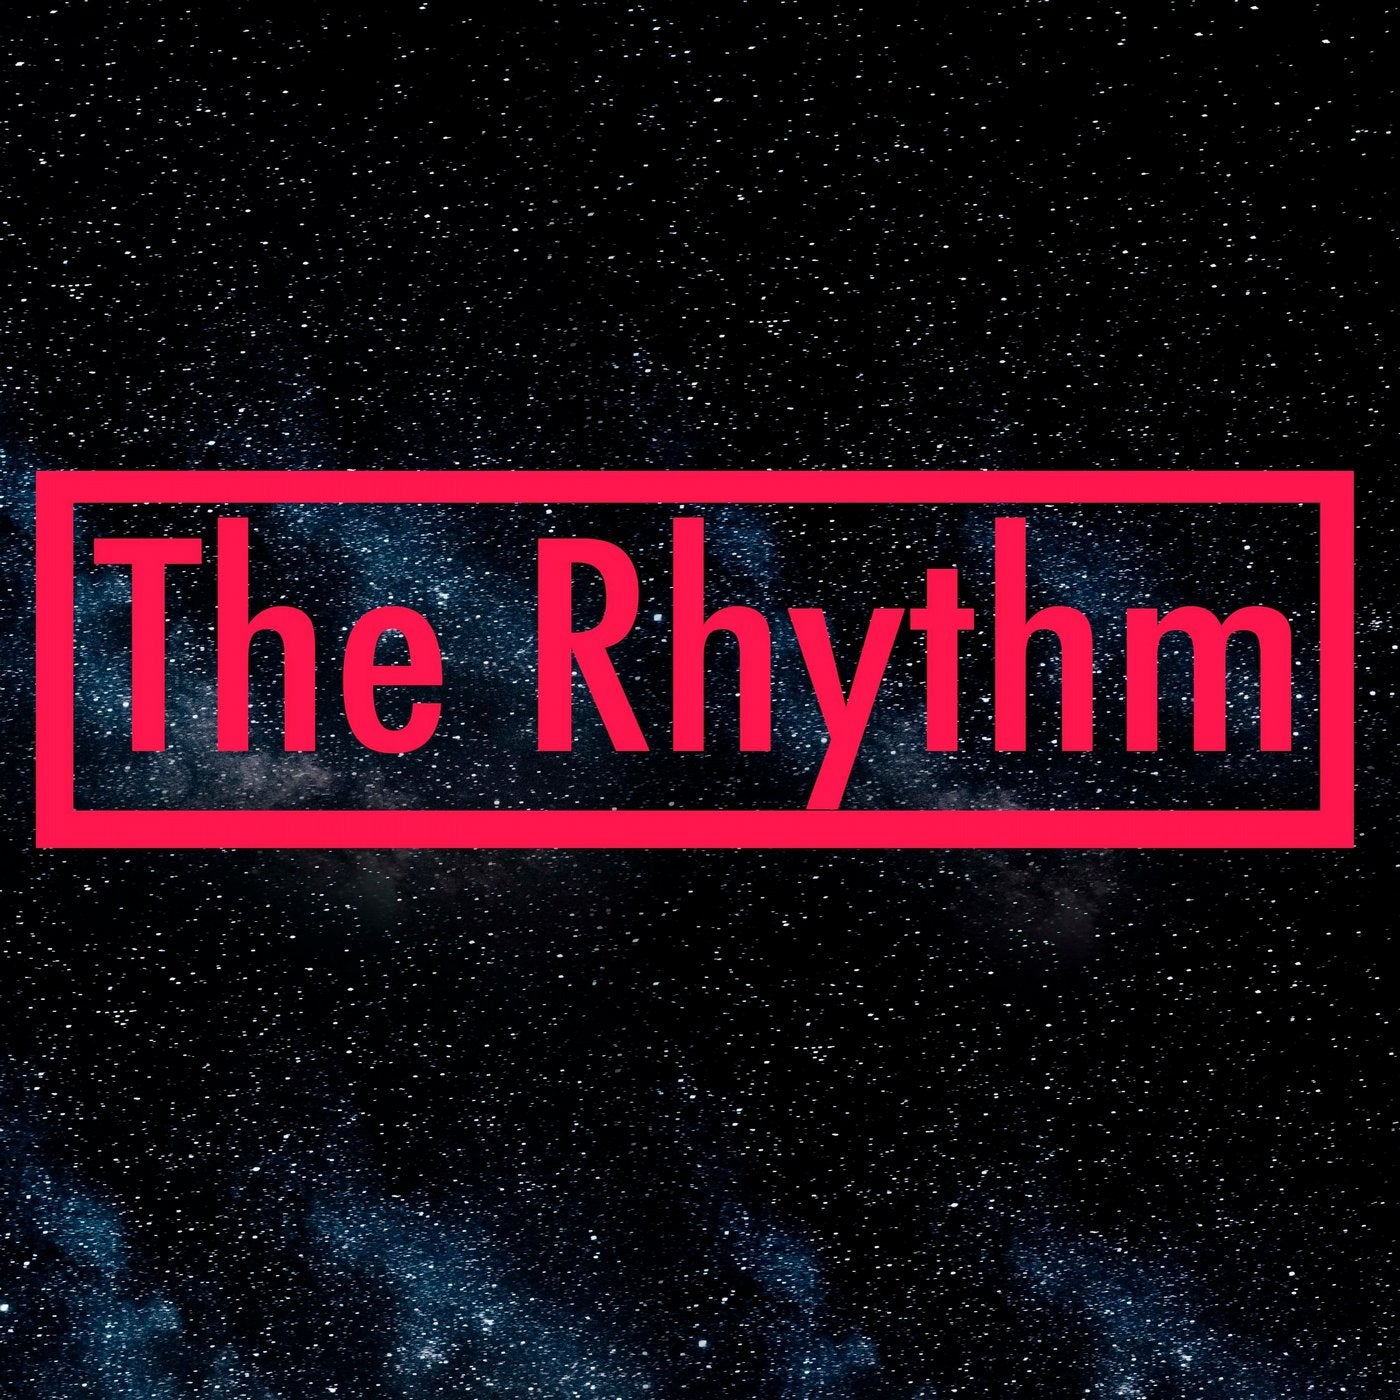 The Rhythm